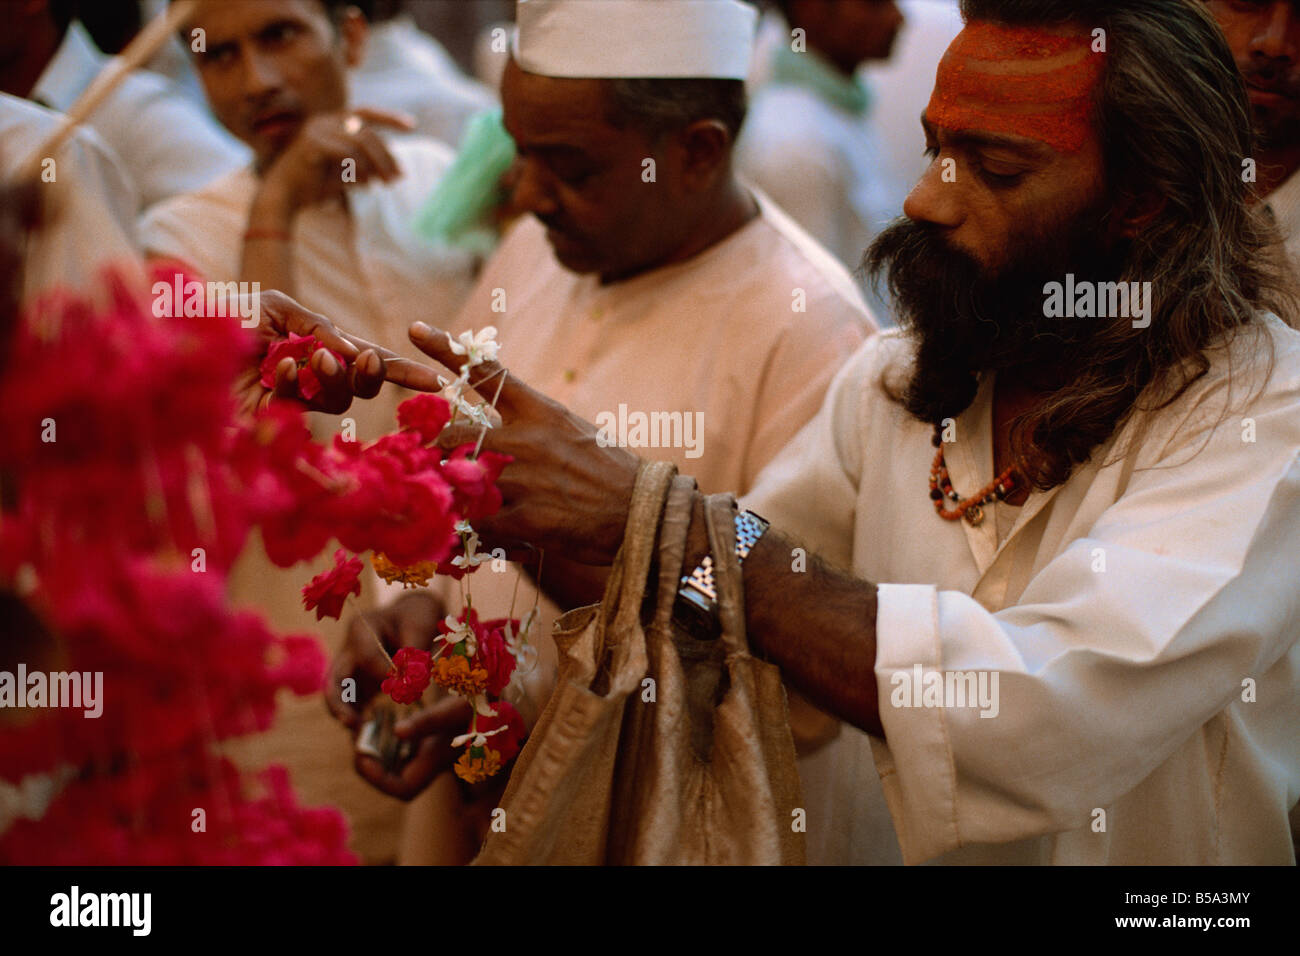 Les hommes dans le marché aux fleurs le nord de l'Inde Asie Inde Banque D'Images